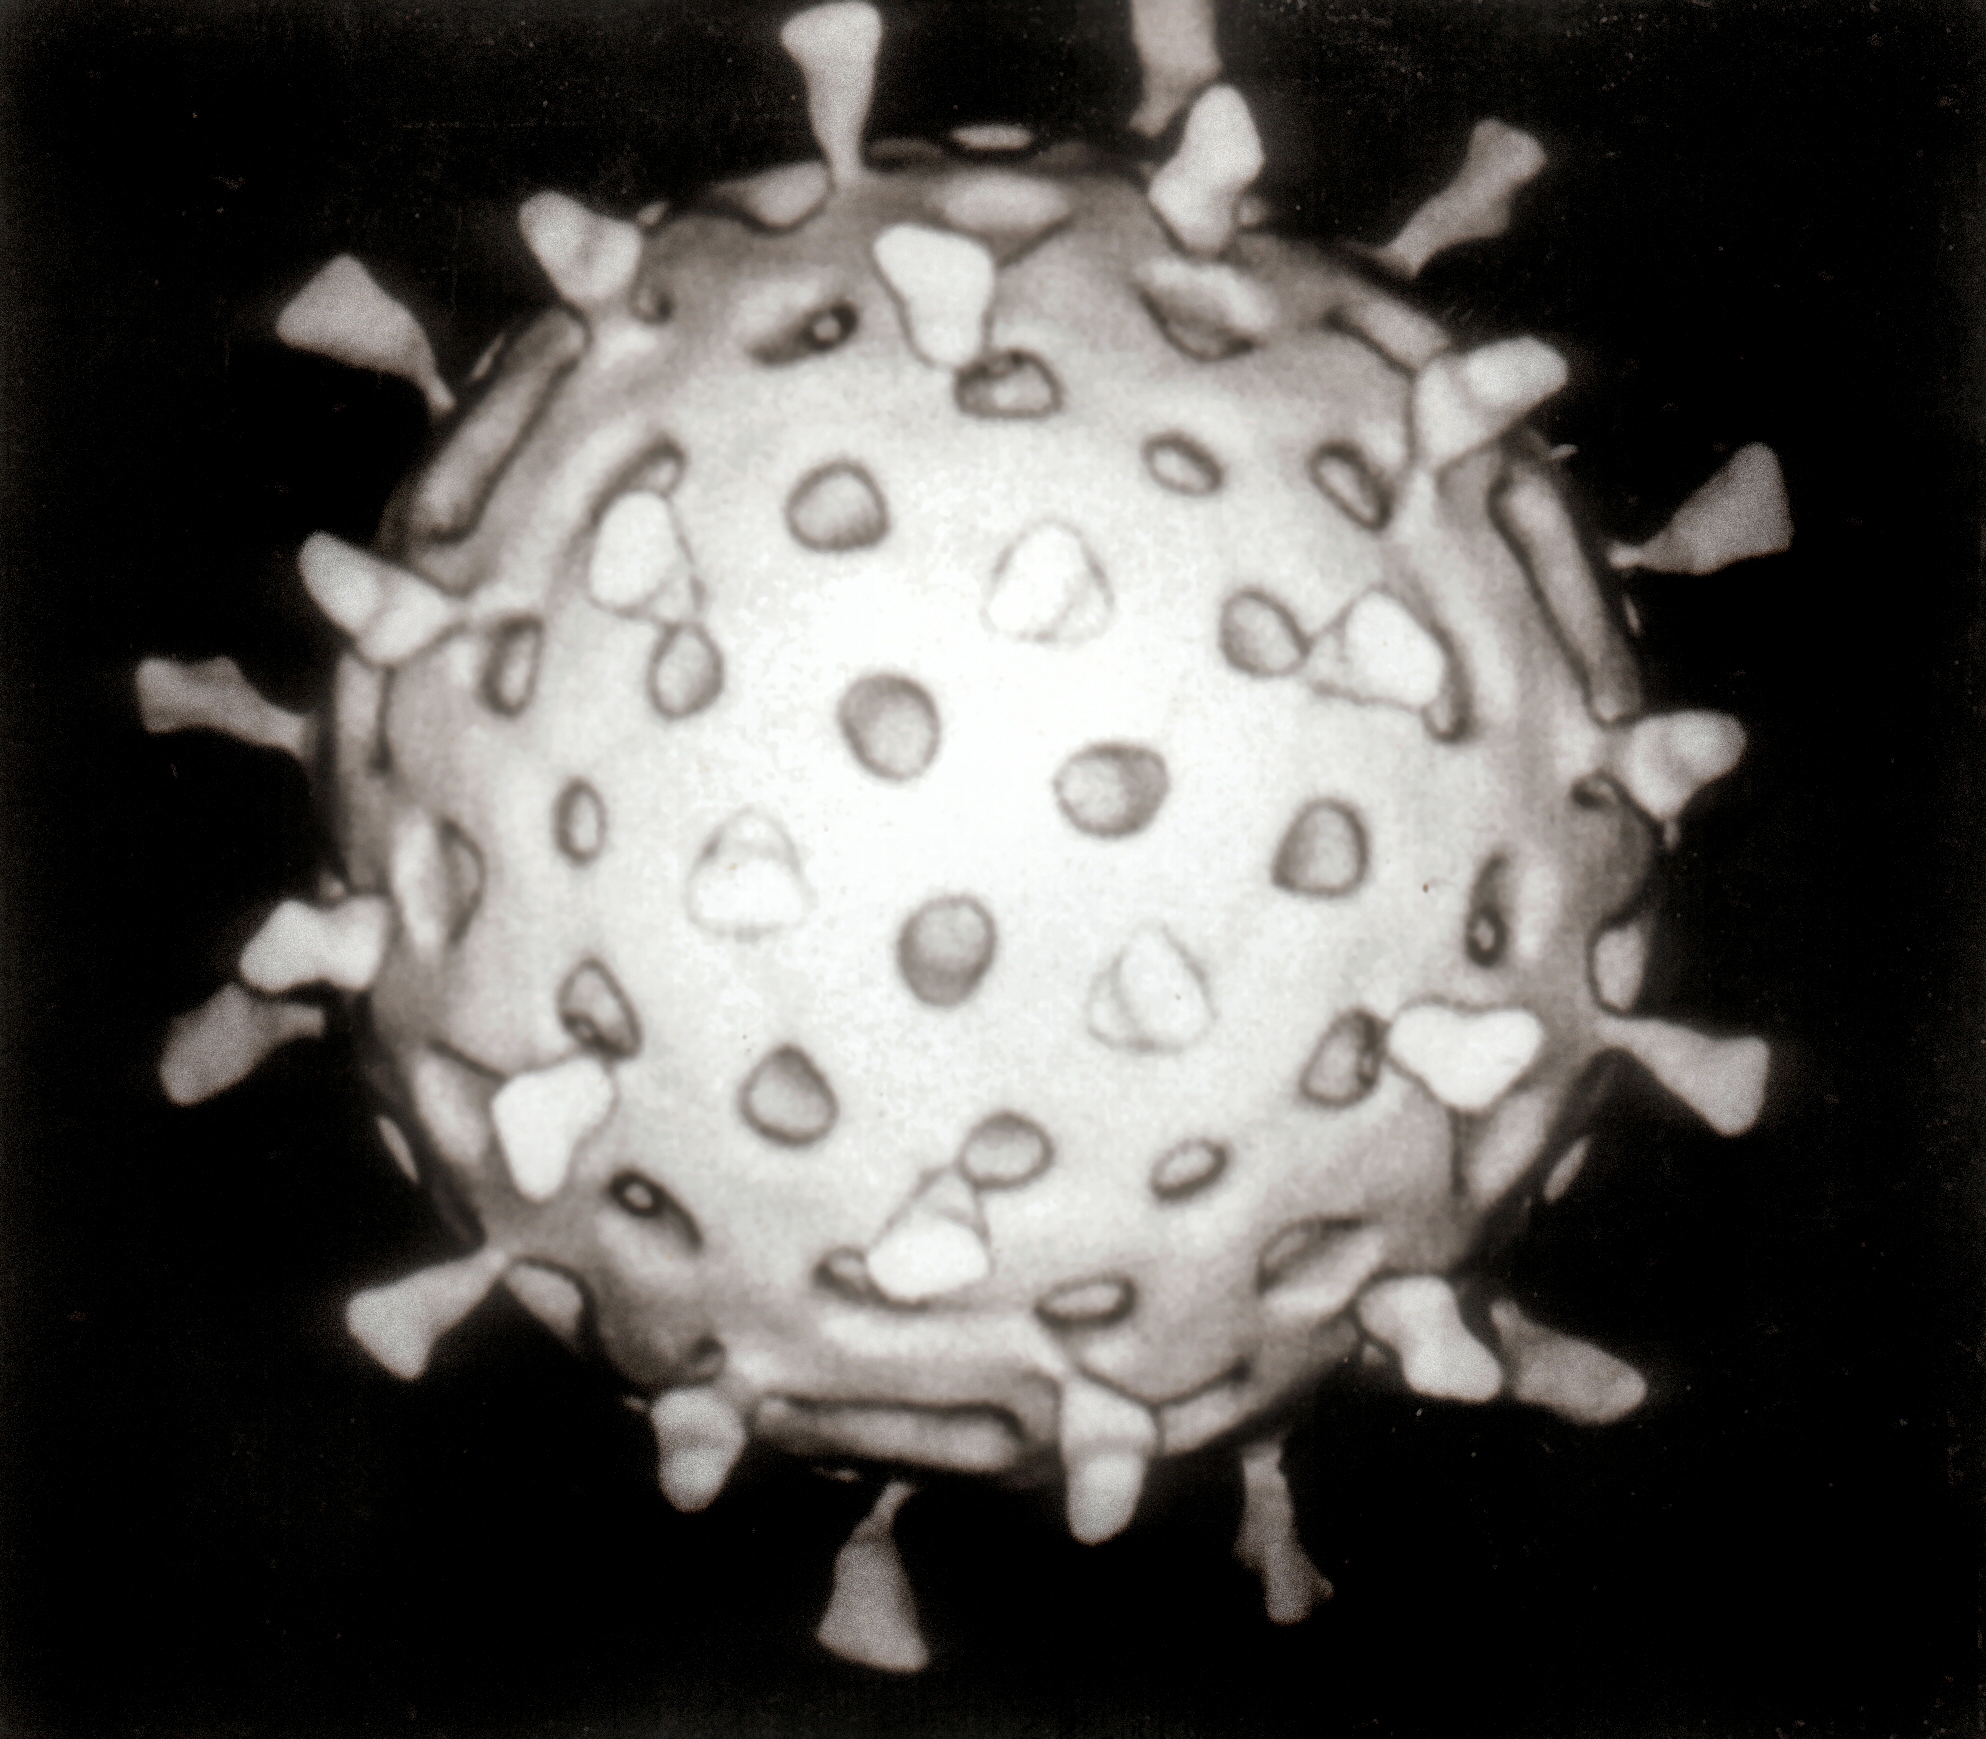 (c) Graham Beards https://commons.wikimedia.org/wiki/File:Rotavirus_Reconstruction.jpg